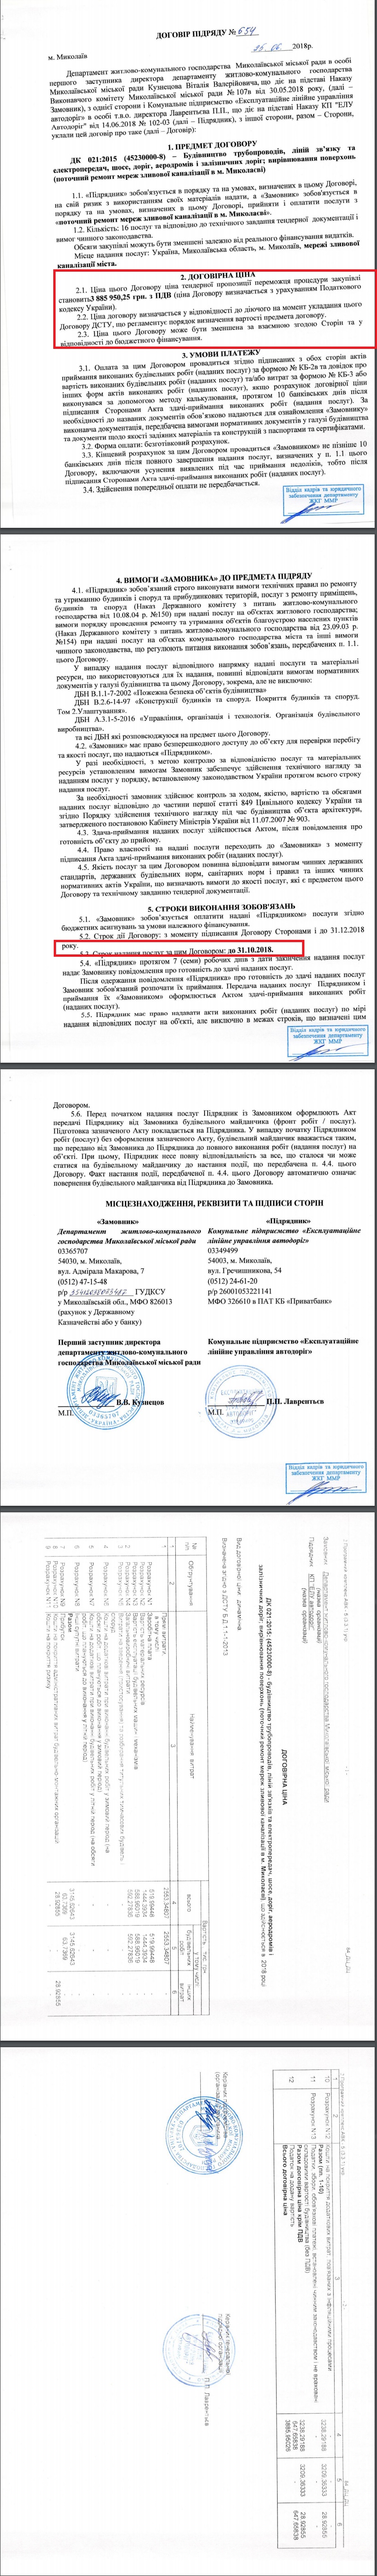 https://prozorro.gov.ua/tender/UA-2018-05-10-001444-c